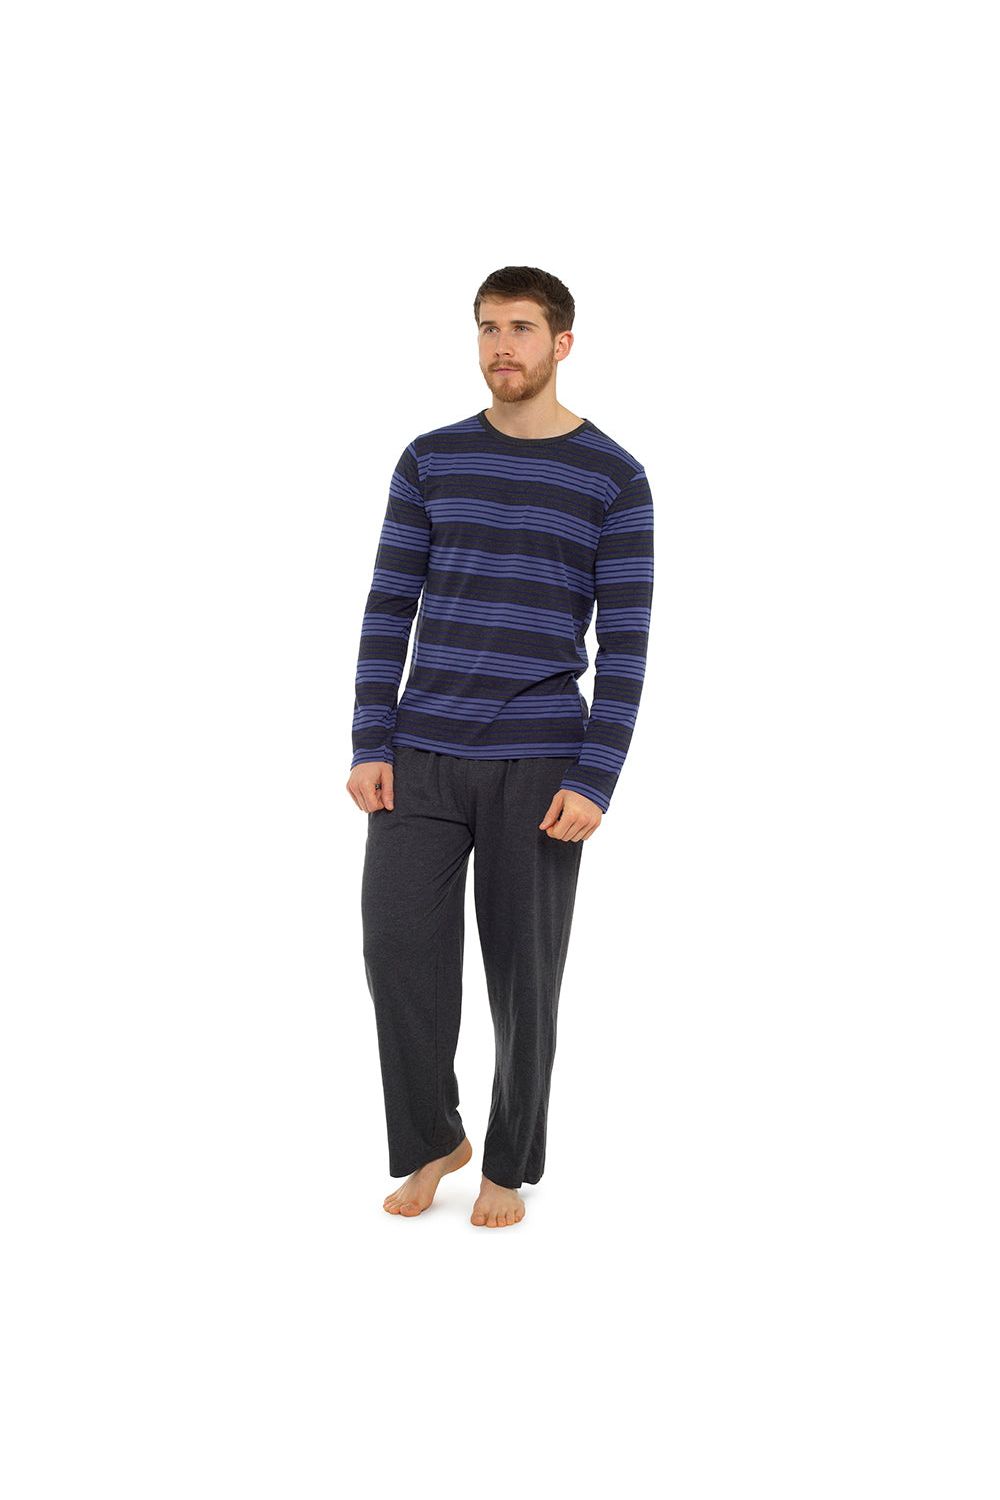 Tom Franks Mens Pyjama Set Long Sleeve Striped Top - Pyjamas.com